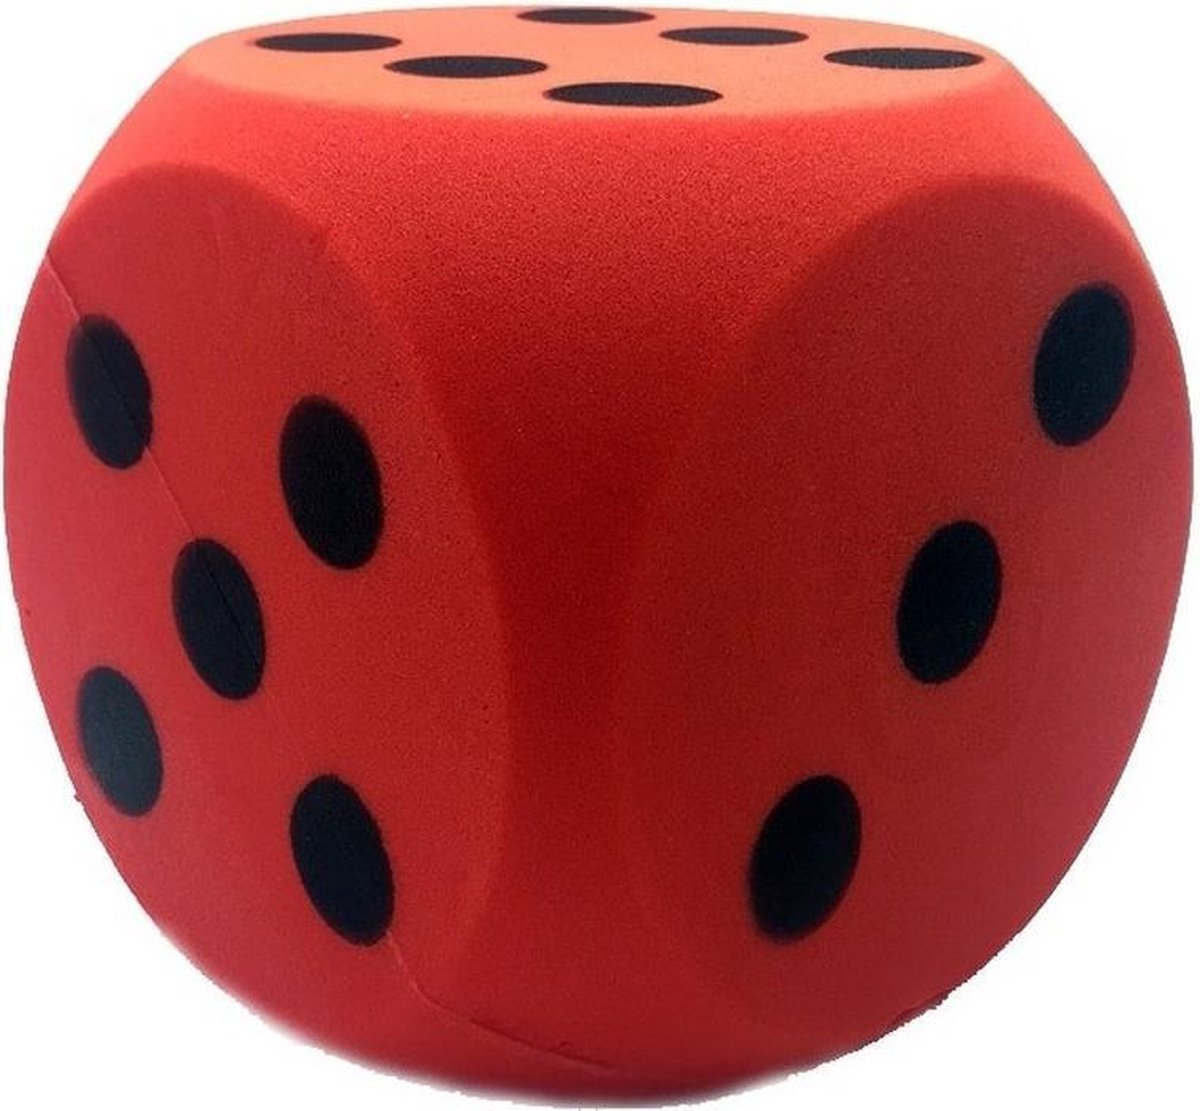 Grote foam dobbelsteen rood 16 x 16 cm - Dobbelspel - Speelgoed - Merkloos